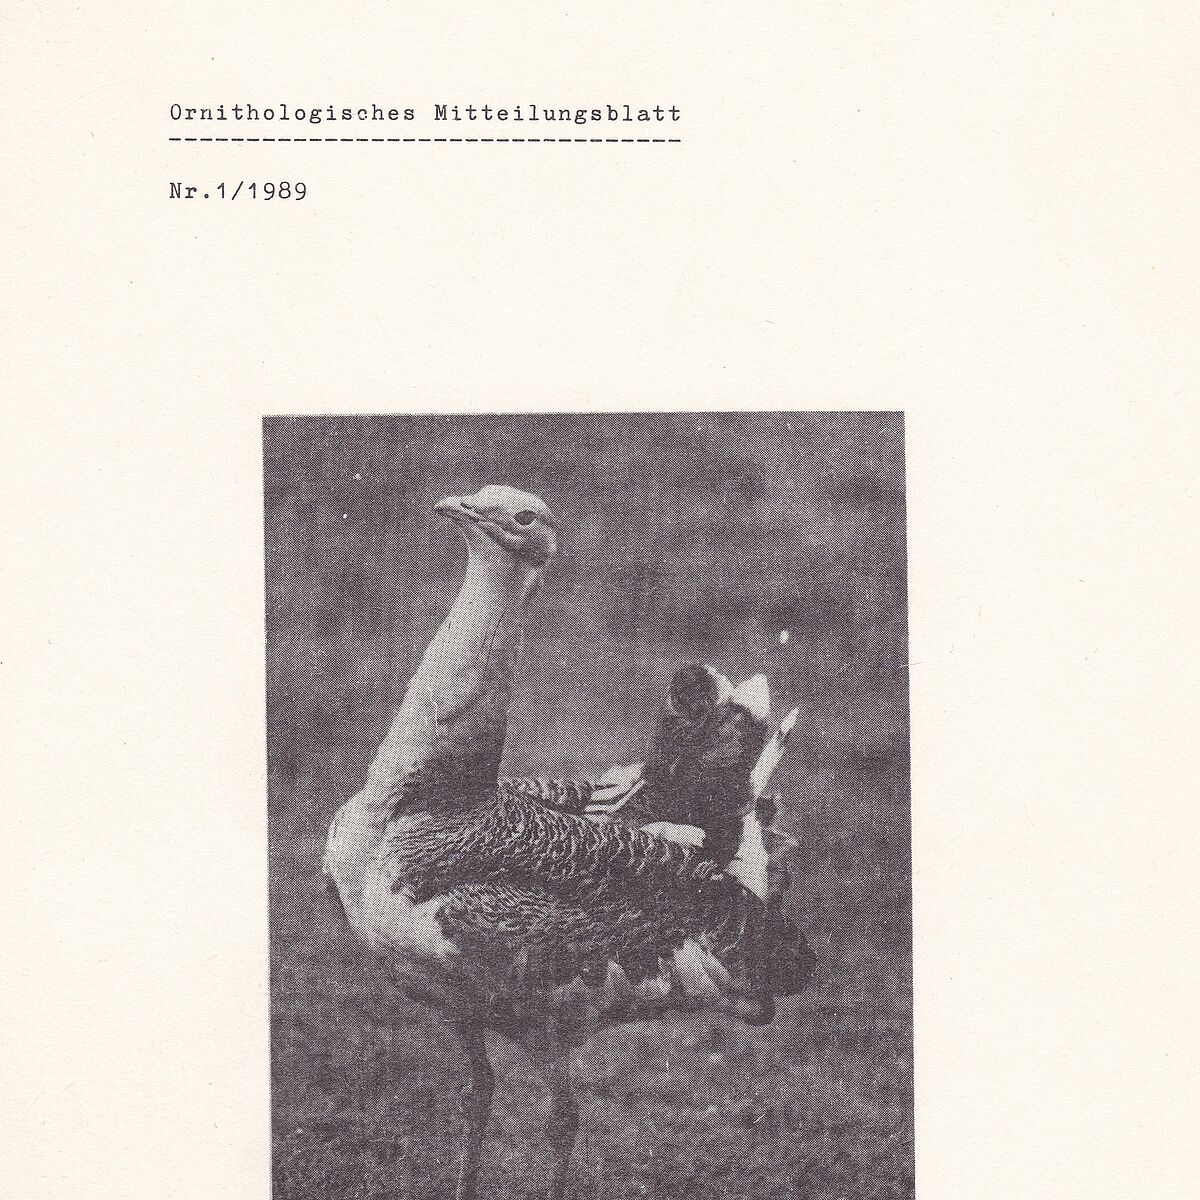 Ornithologisches Mitteilungsblatt